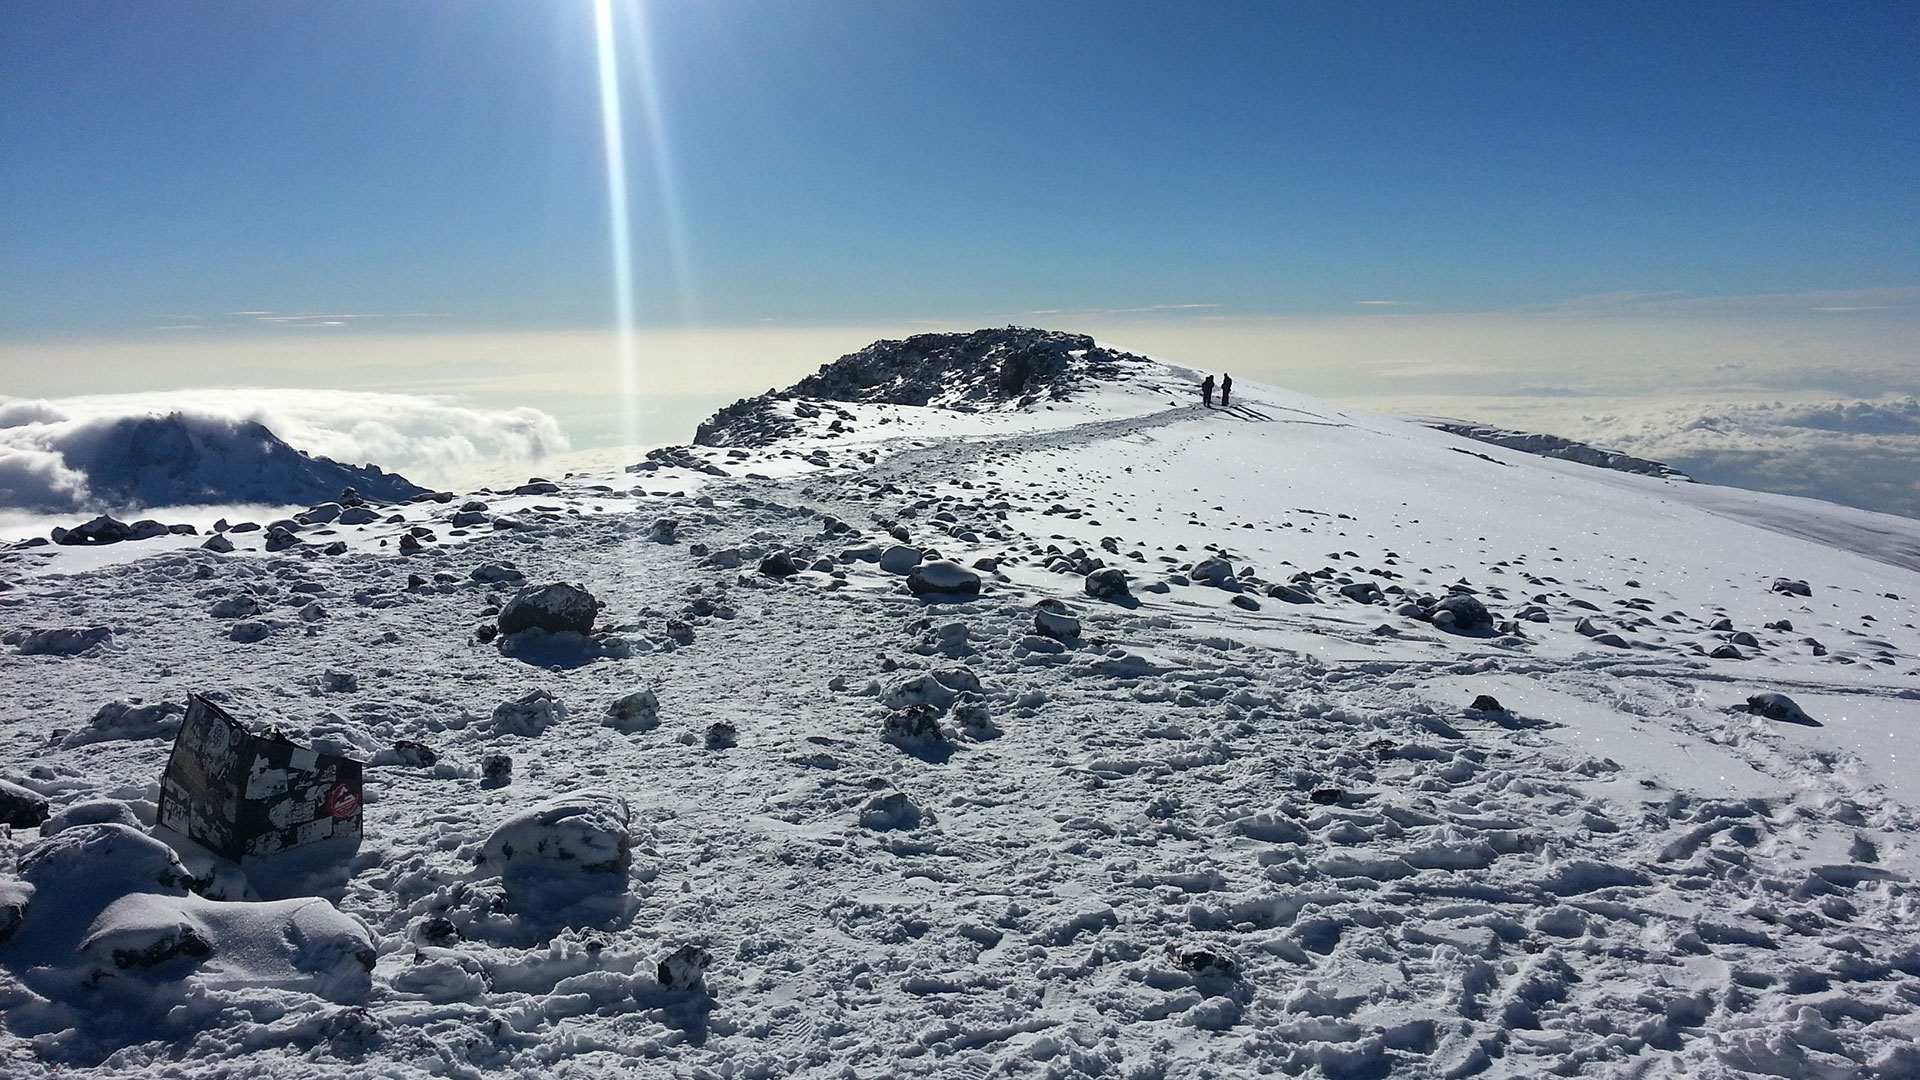 Kilimanjaro vuori